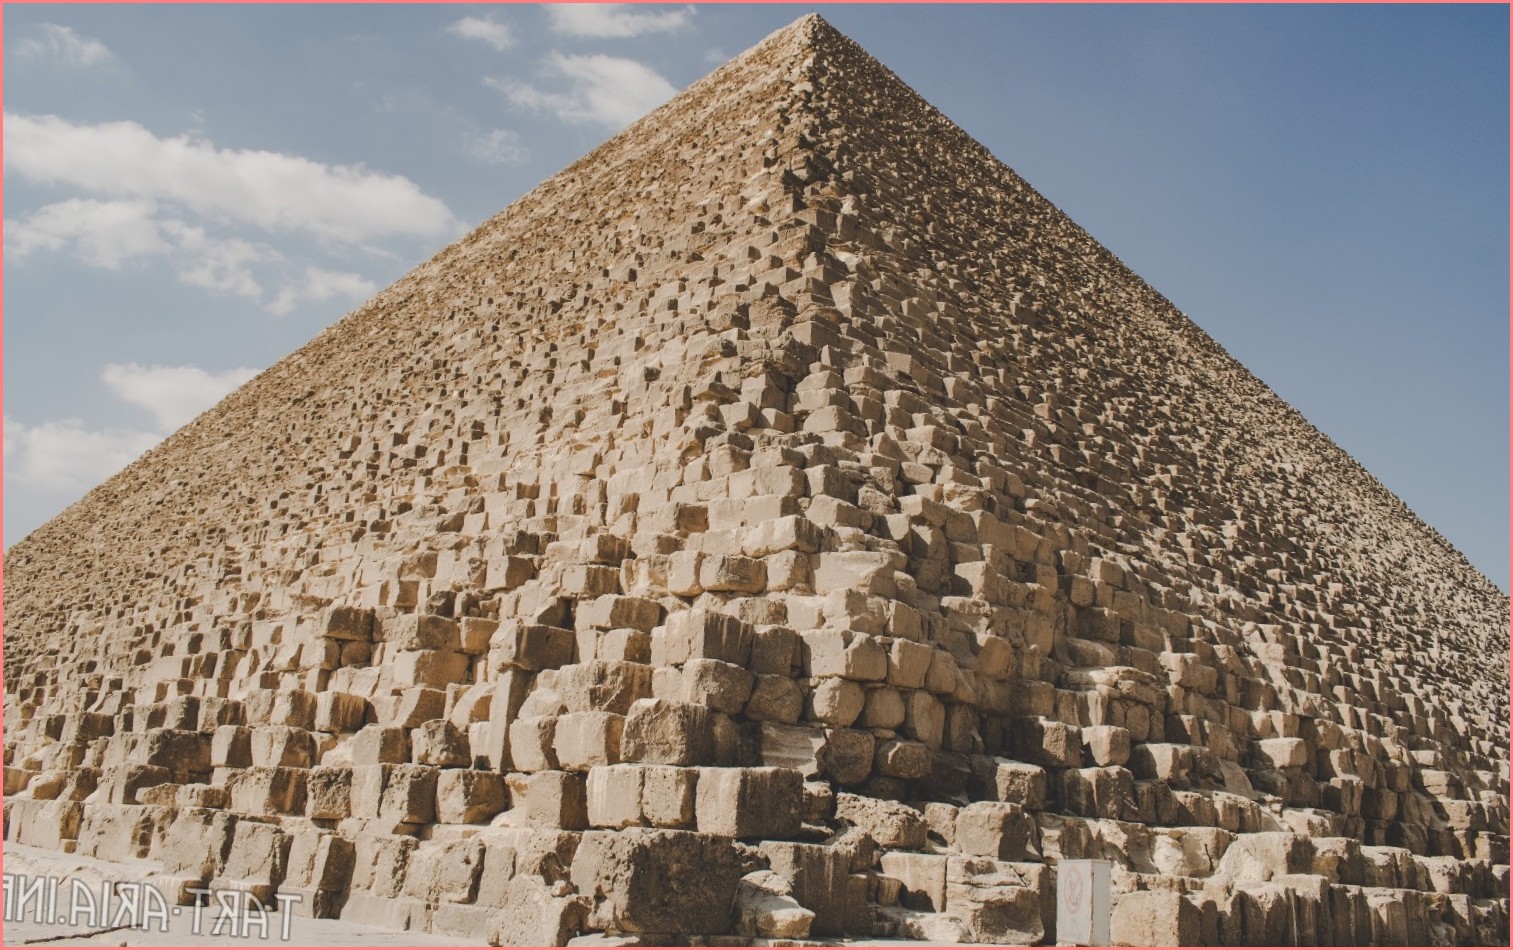 Пирамиды Боснии - просто миф или увлекательное археологическое открытие? Что представляют собой Пирамиды Боснии самыми большими рукотворными